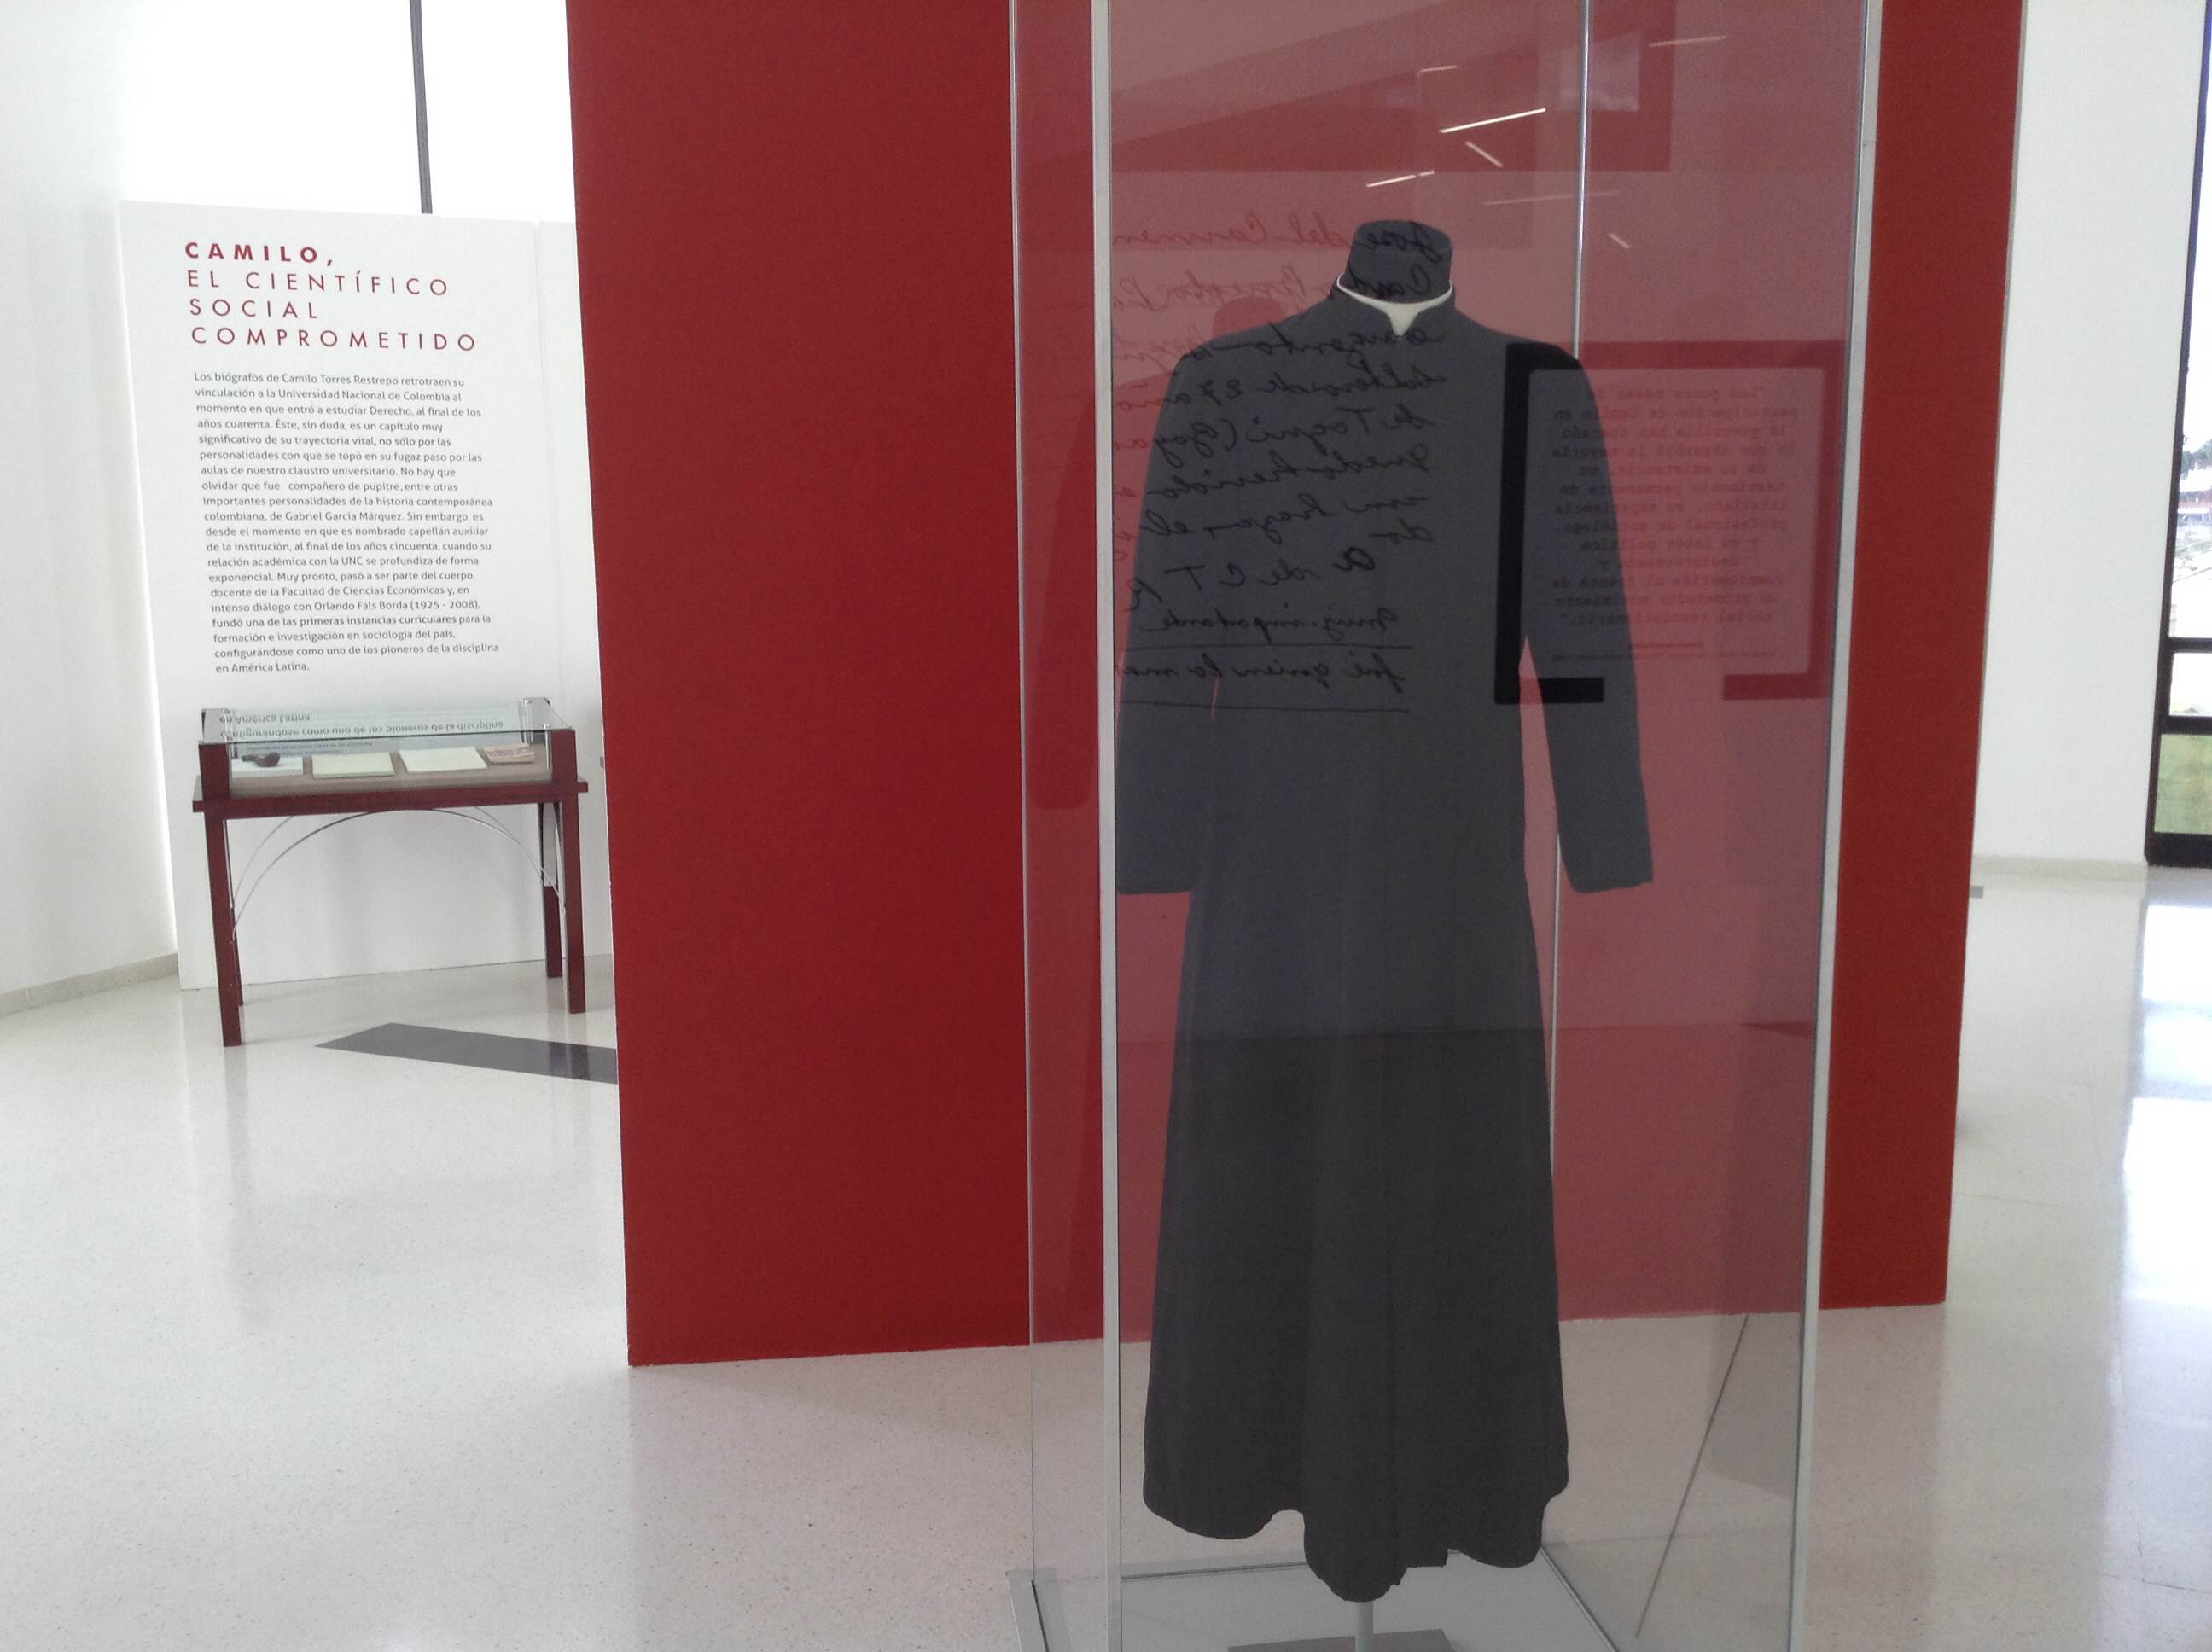 2. La sotana de Camilo Torres es uno de los objetos que se pueden encontrar en la sala de exposición. (1)